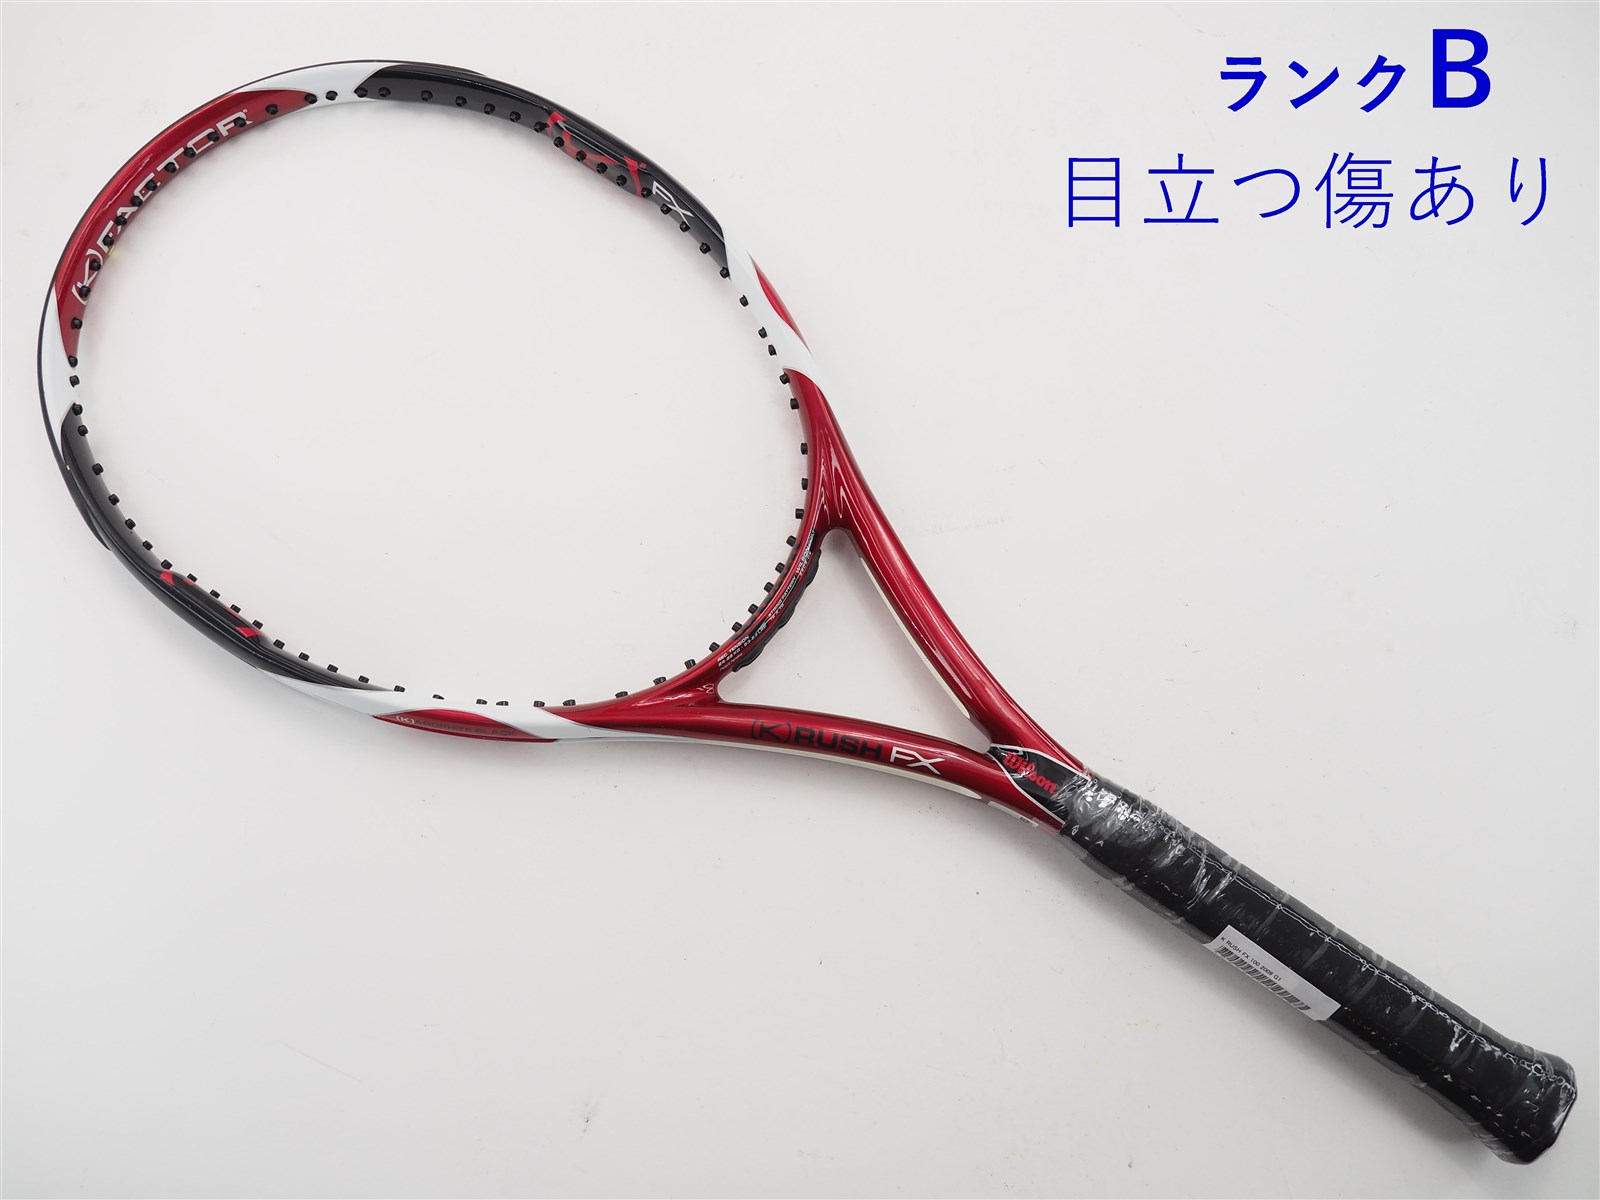 【錦織圭選手モデル】テニスラケット Wilson K RUSH FX100 G1